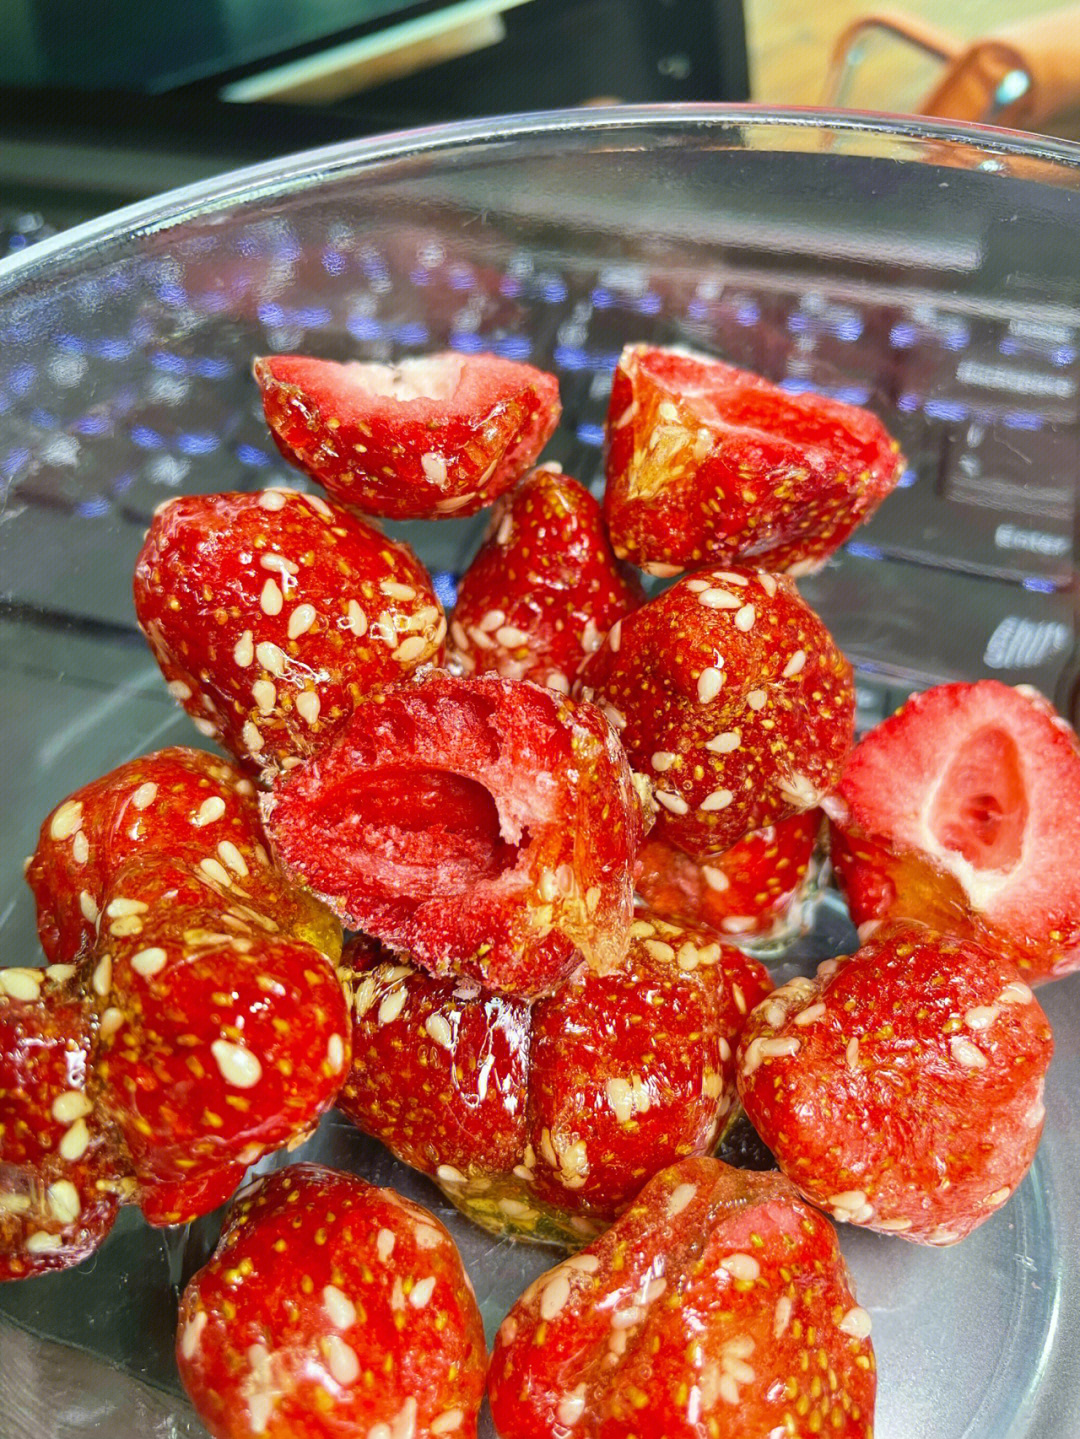 感谢小红薯们分享这个冰糖草莓太好吃了